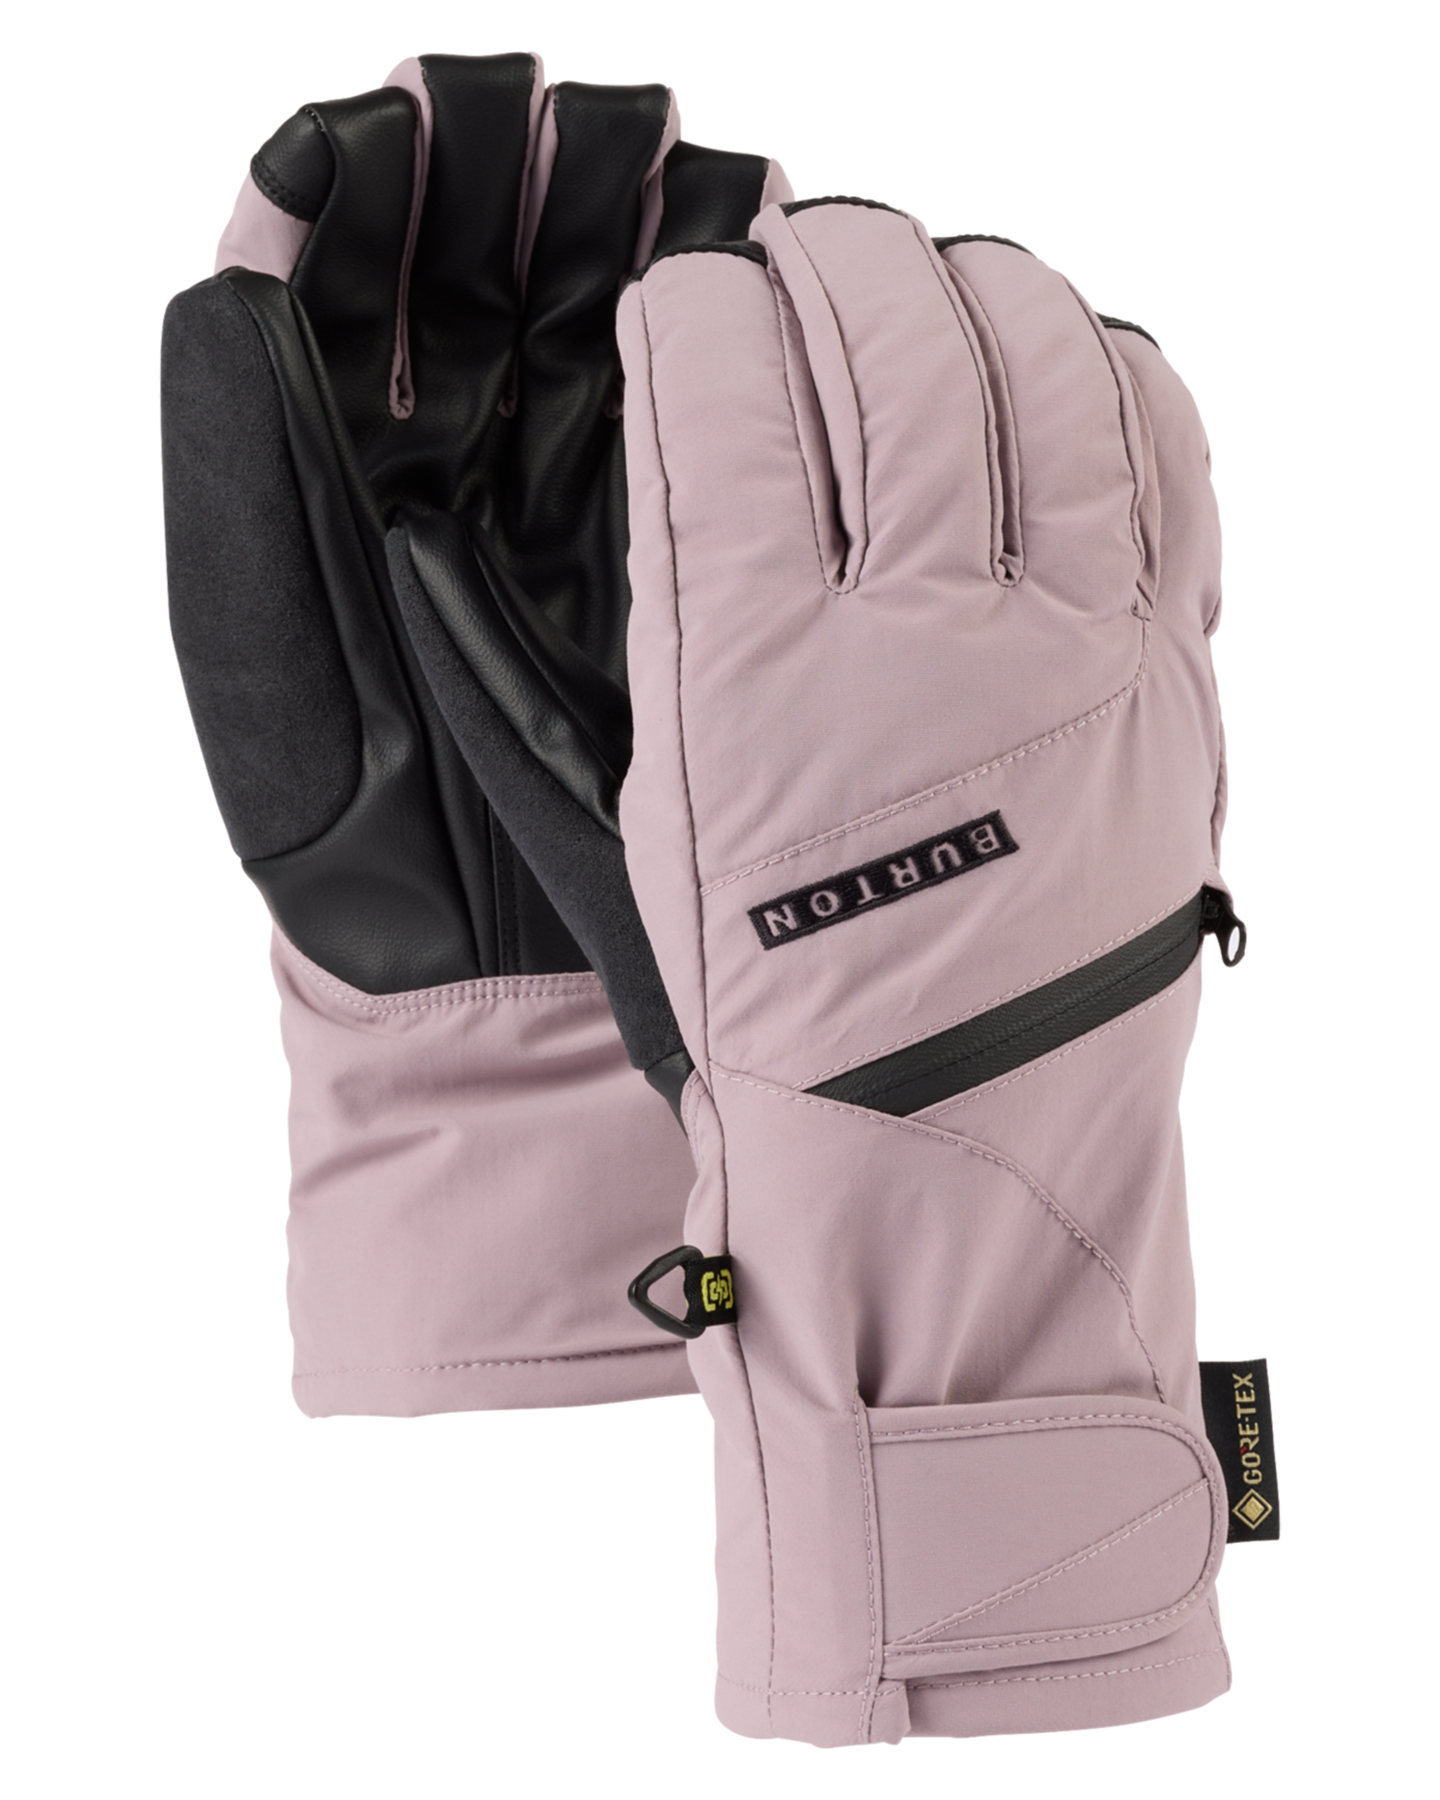 Burton Women's Gore-Tex Under Snow Gloves - Elderberry Women's Snow Gloves & Mittens - SnowSkiersWarehouse